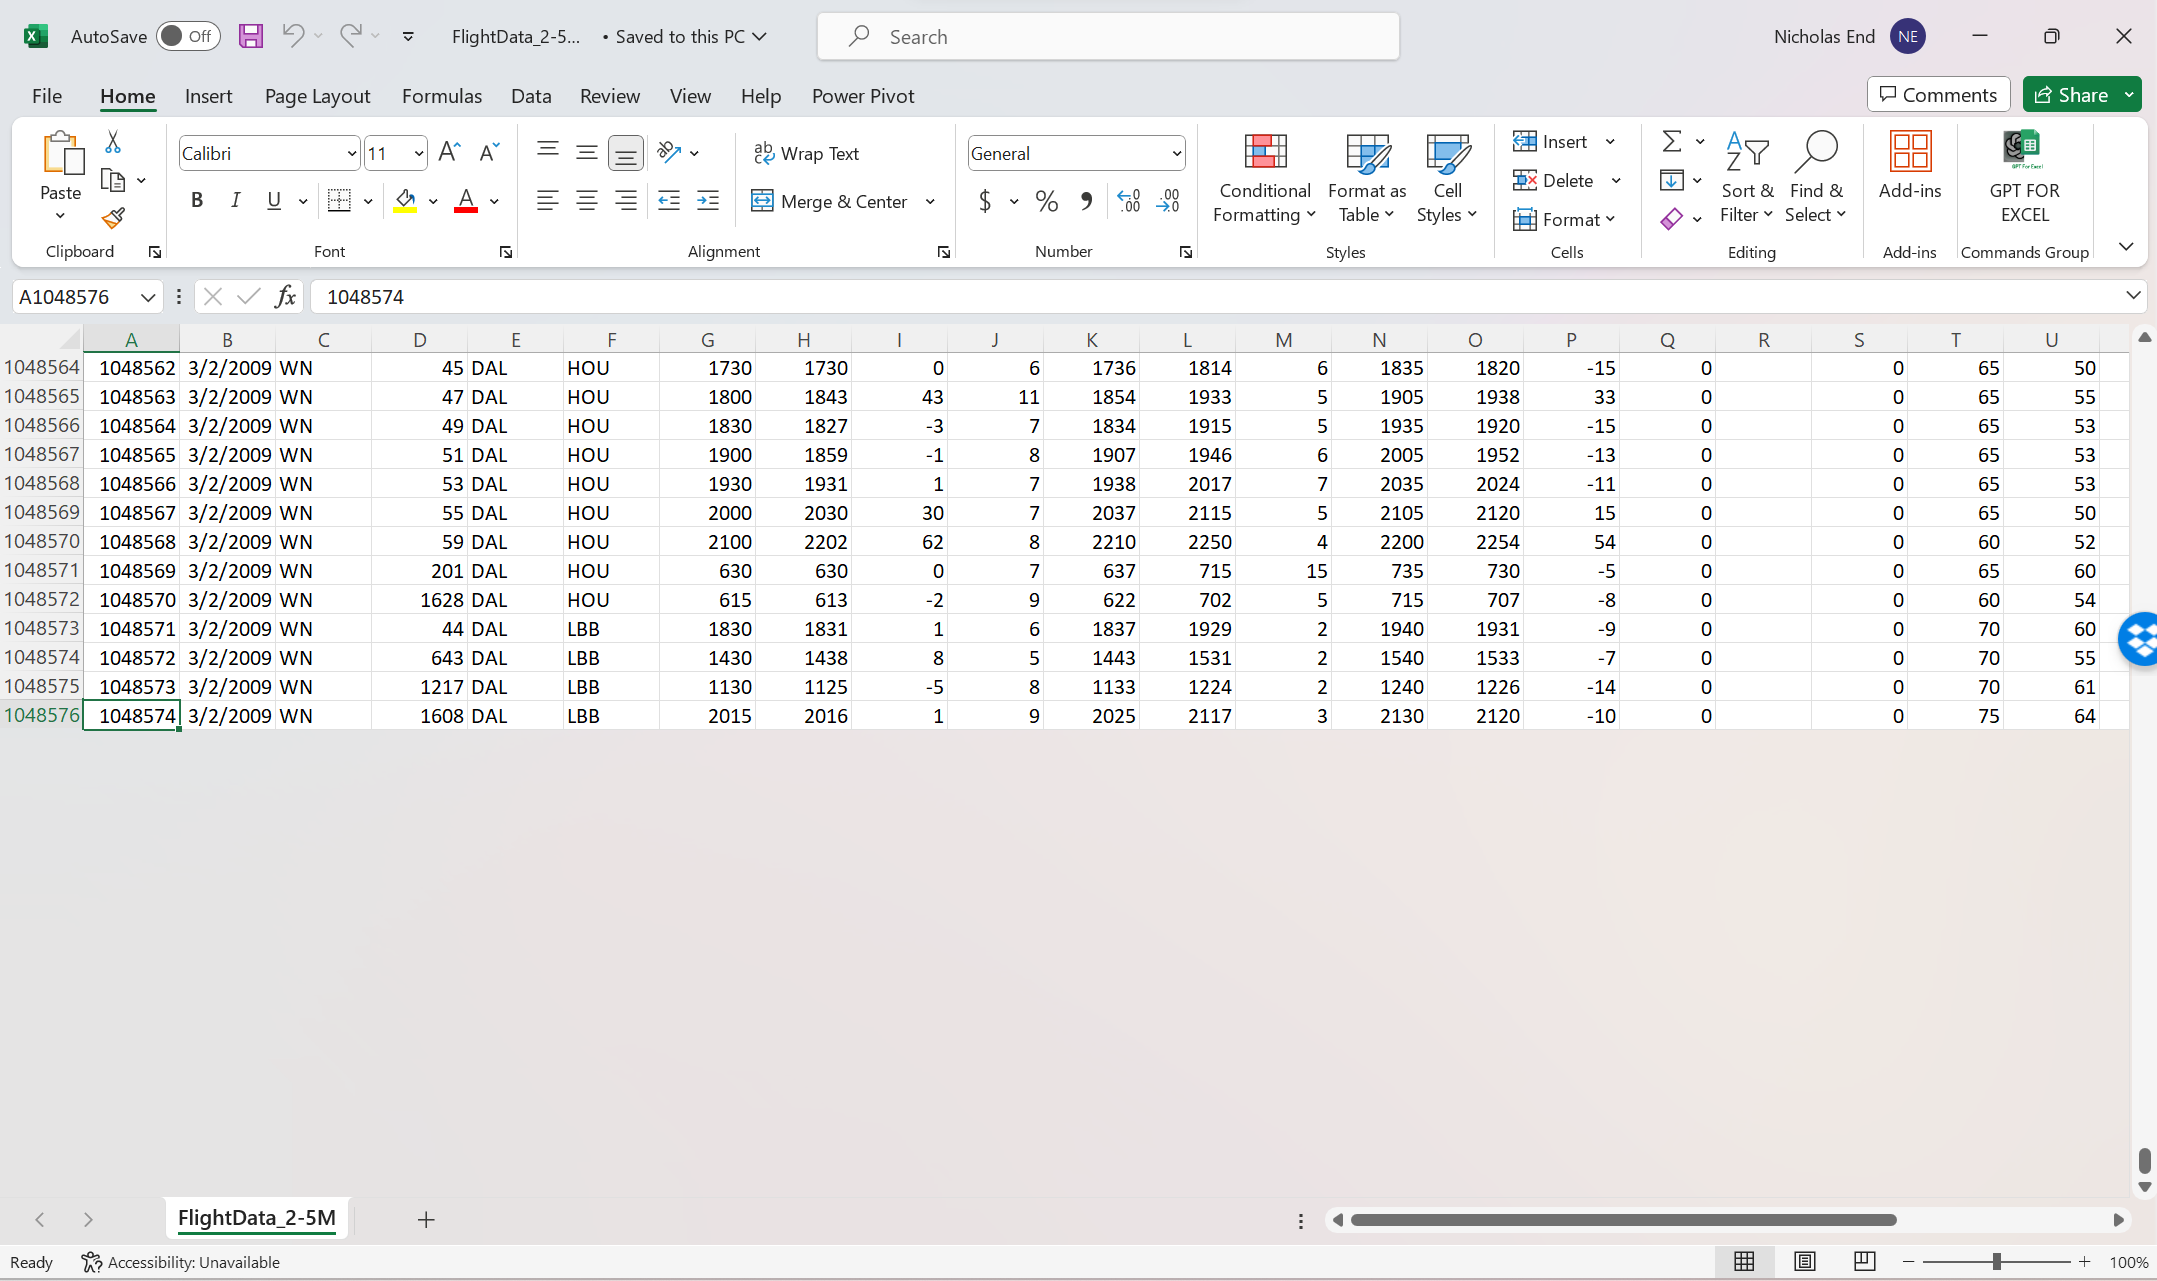 Excel limit data truncated